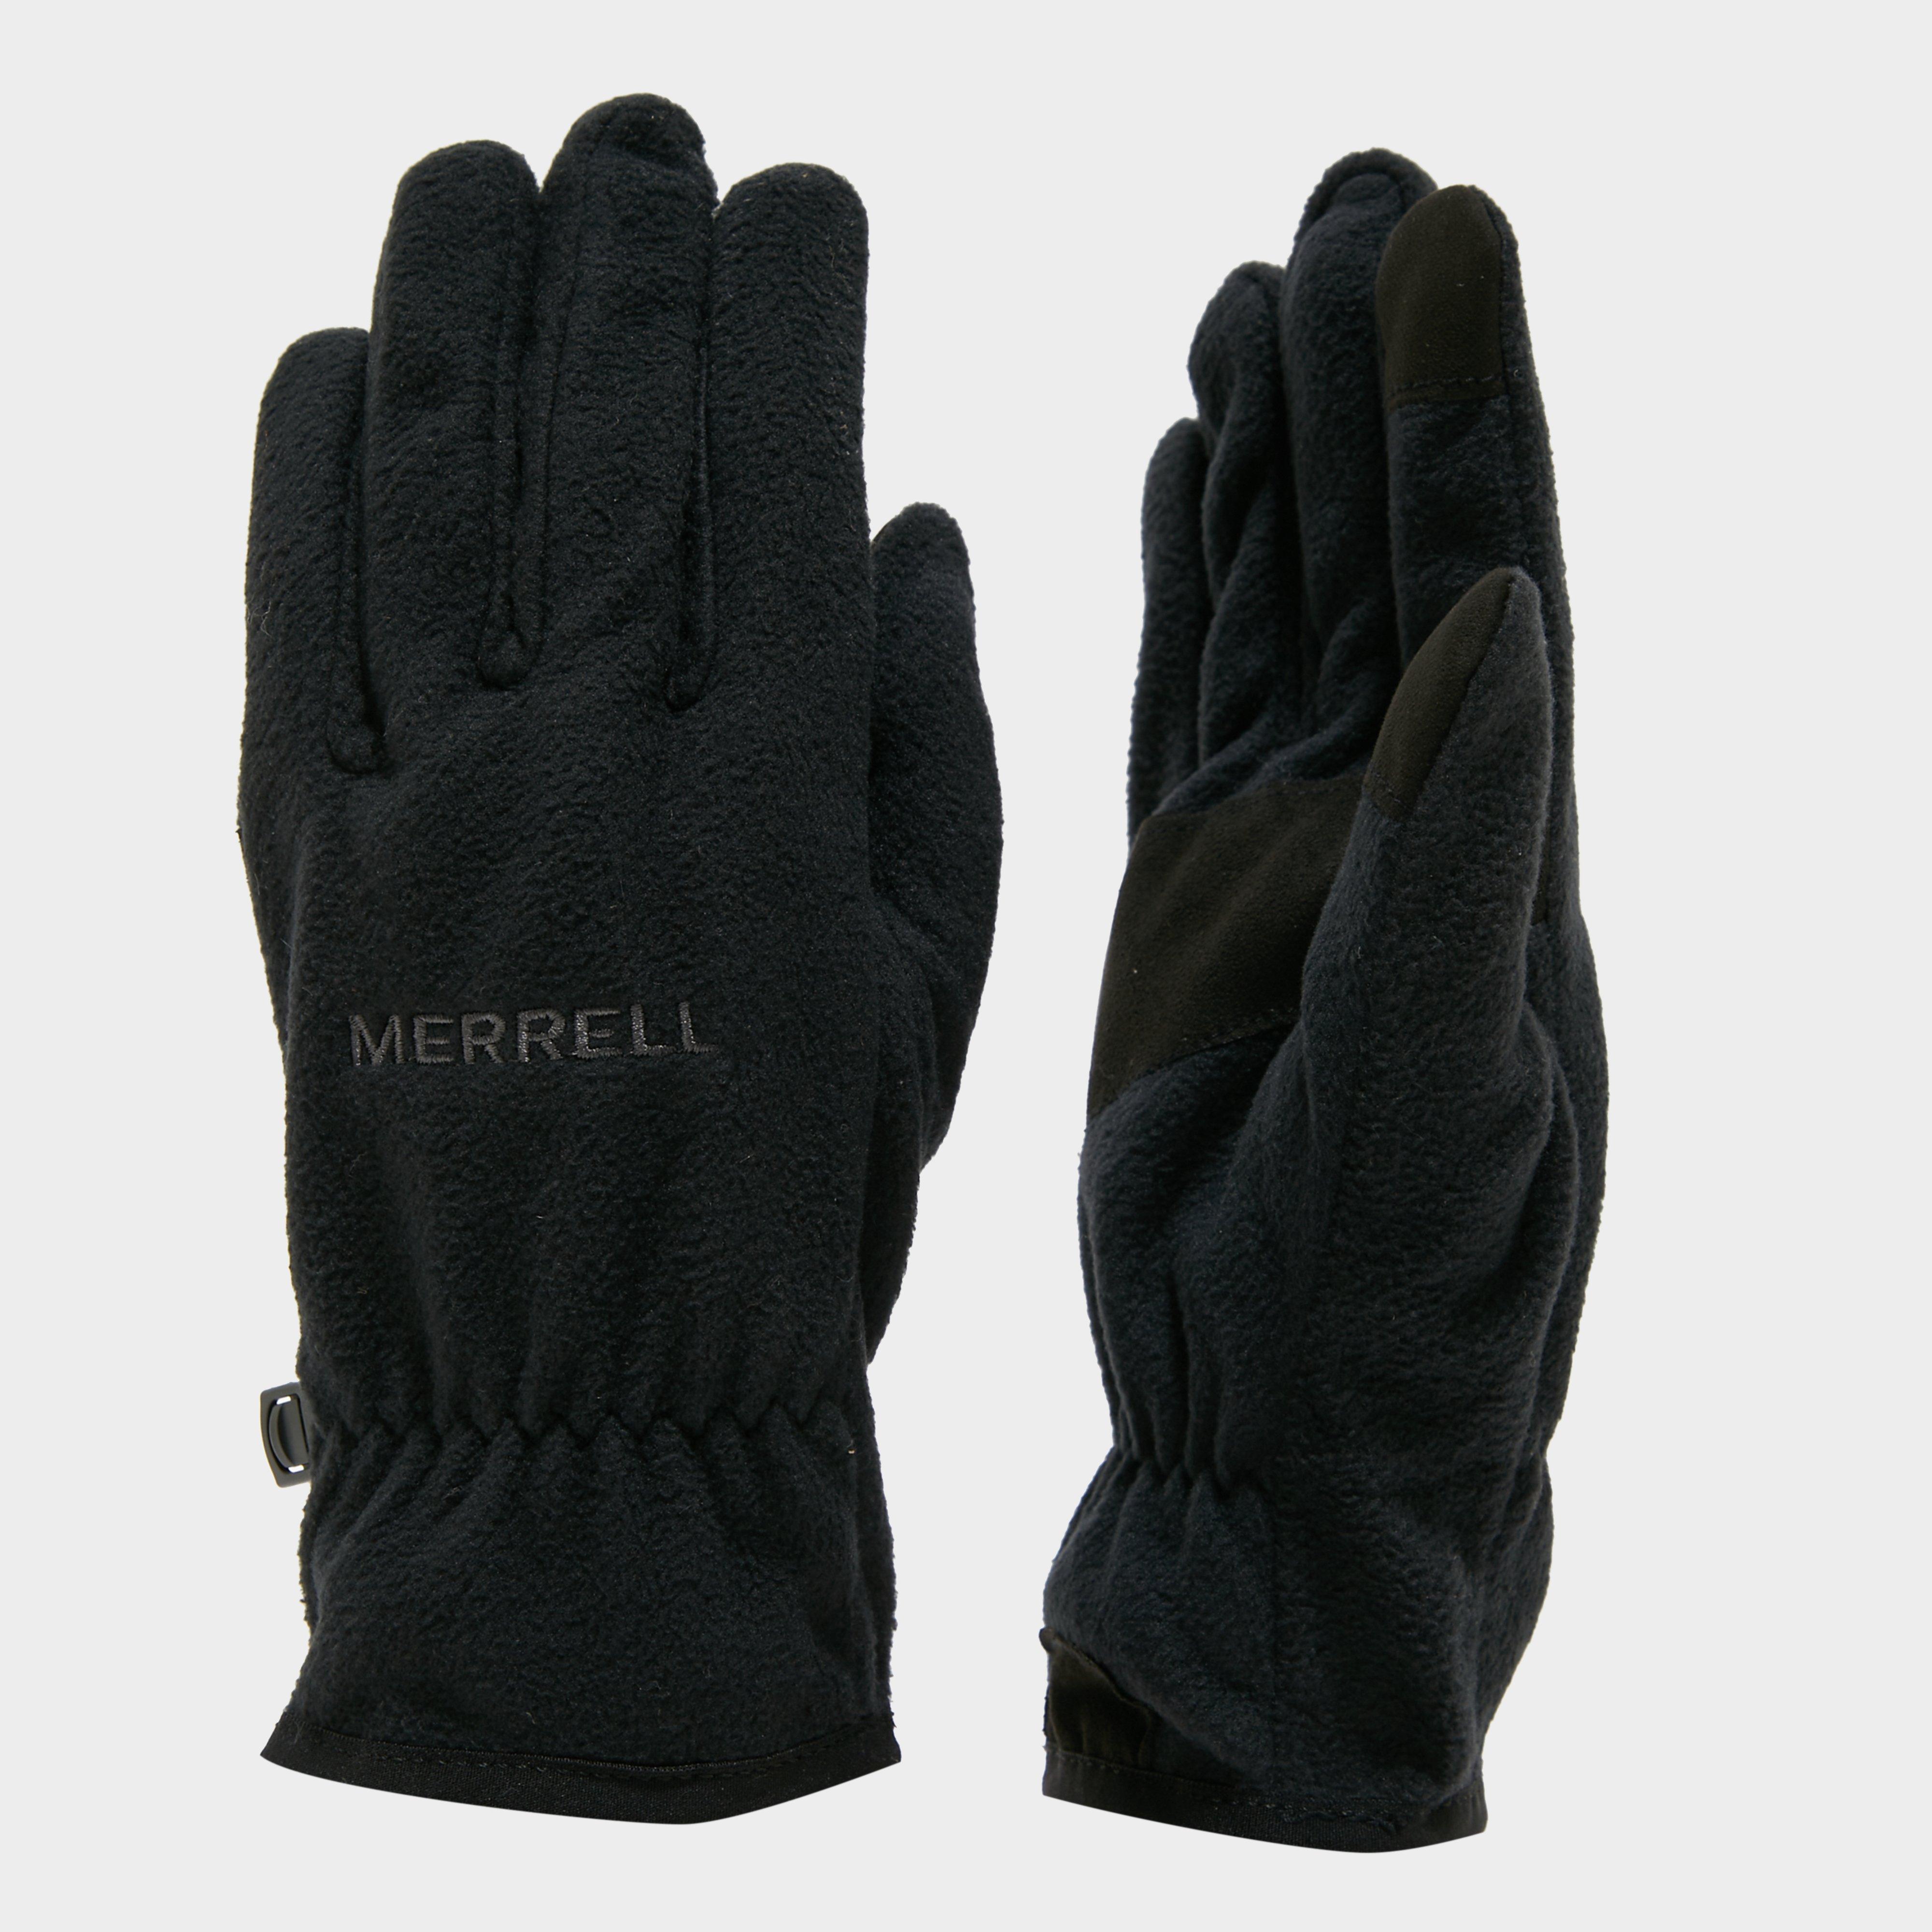 Merrell Mens Classic Fleece Gloves - Black/black  Black/black